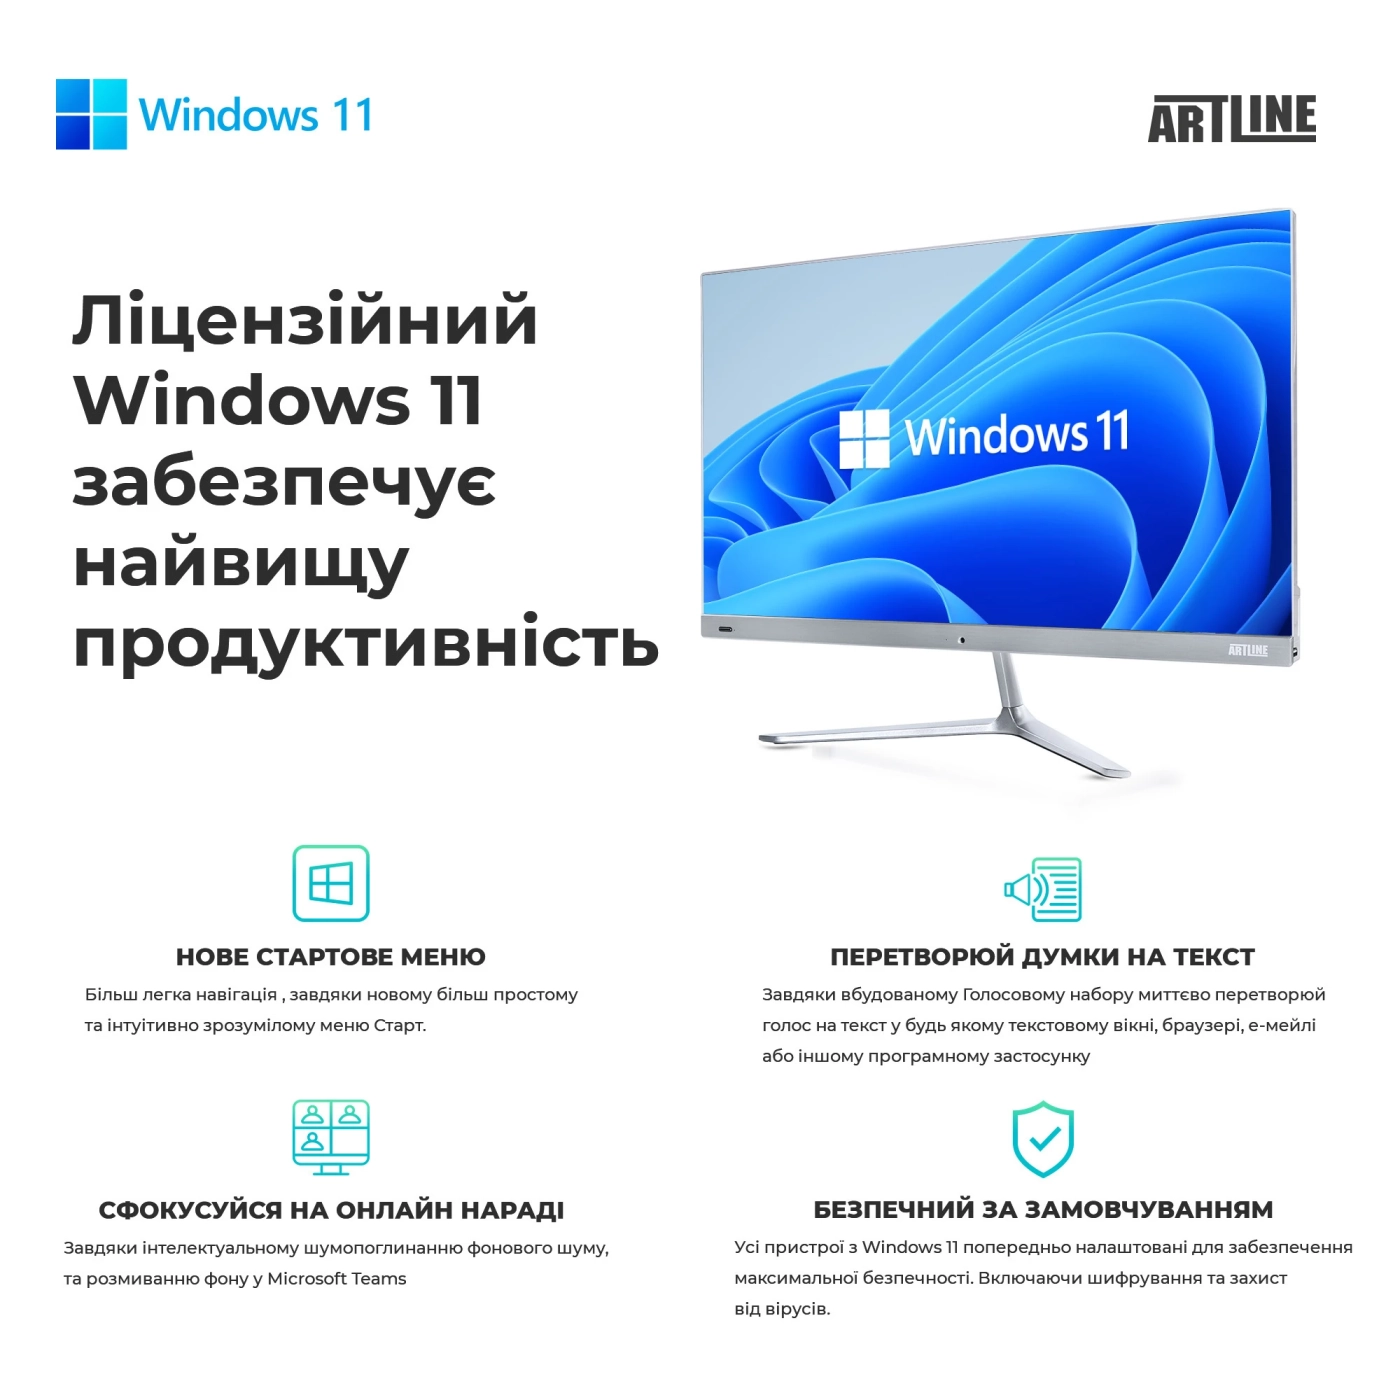 Купить Рабочая станция ARTLINE WorkStation W96 Windows 11 Pro (W96v30Win) - фото 10